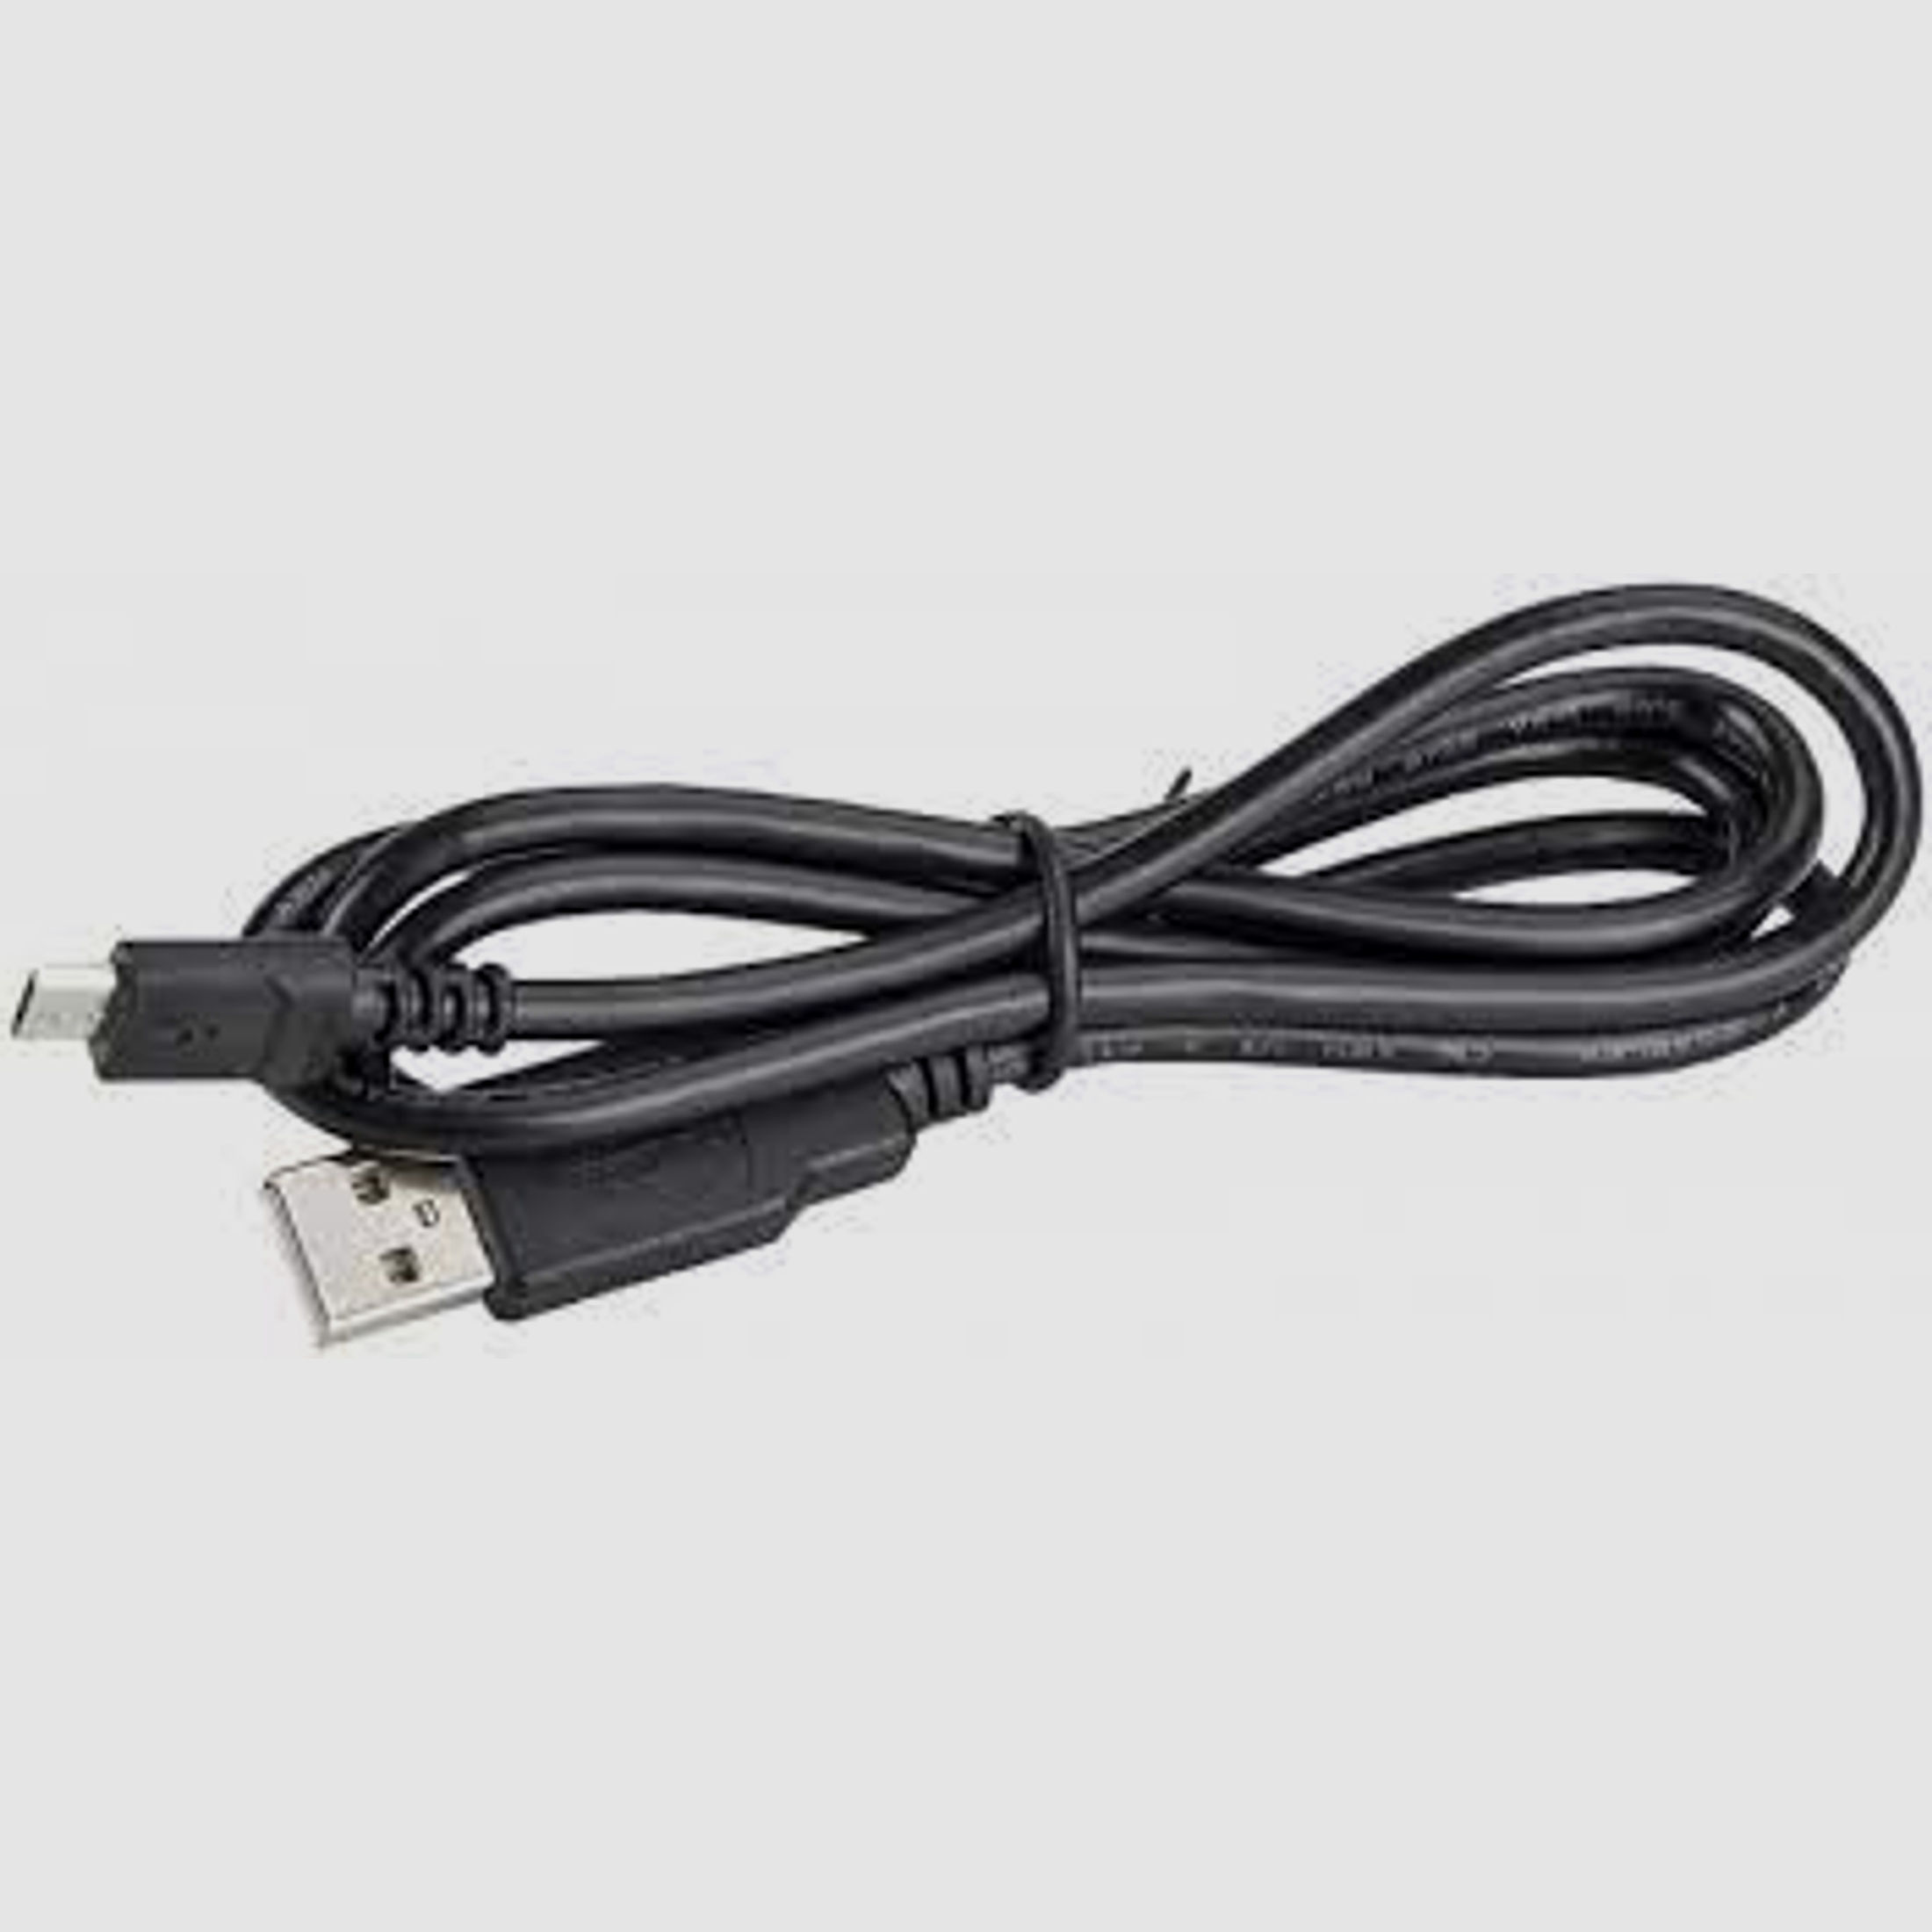 Pulsar USB Kabel für Pulsar Helion, Forward , Krypton und Accolade Modelle